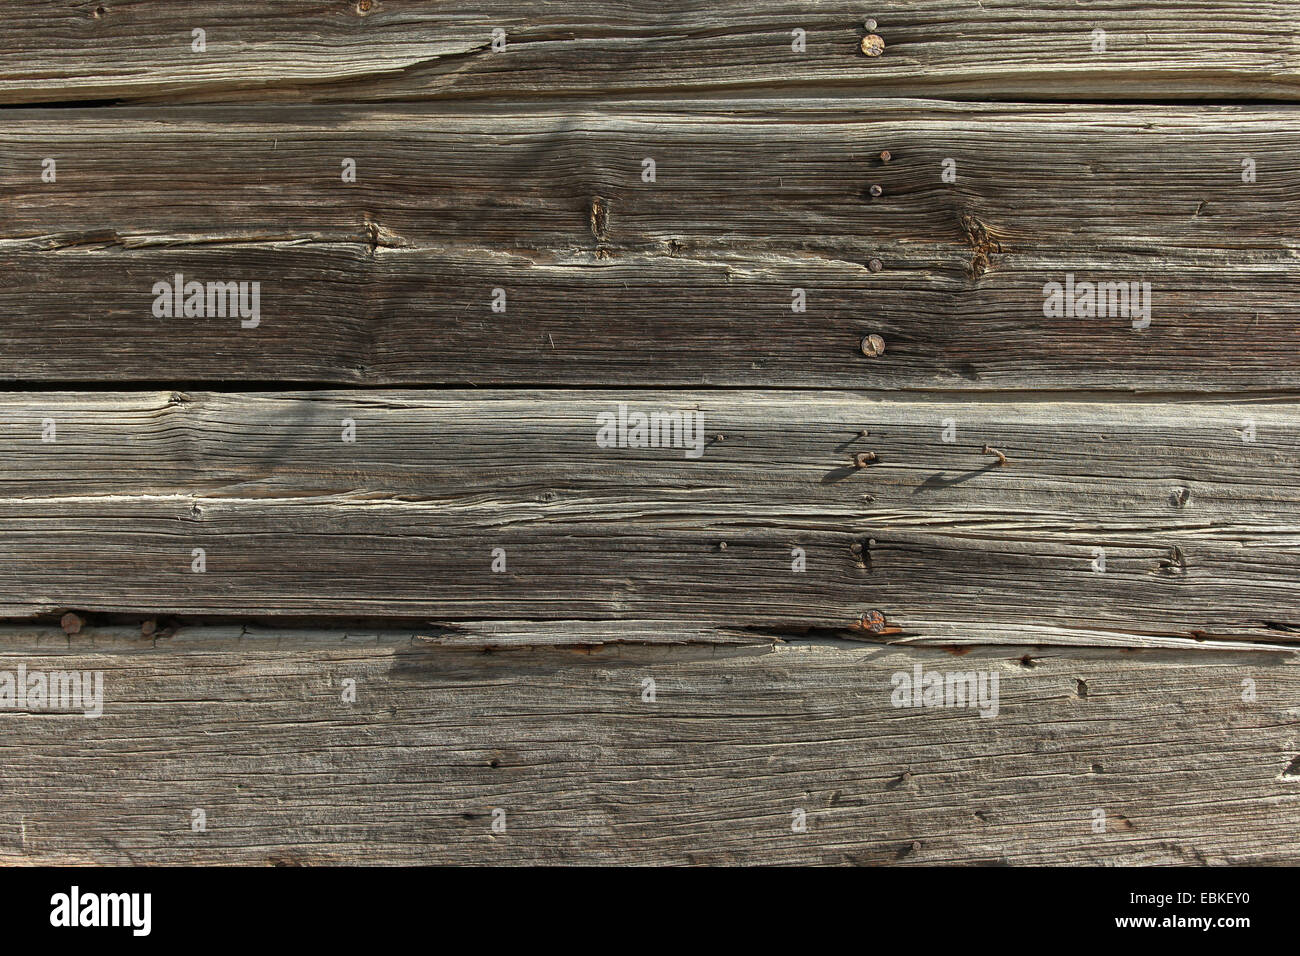 Old wood panels background Stock Photo